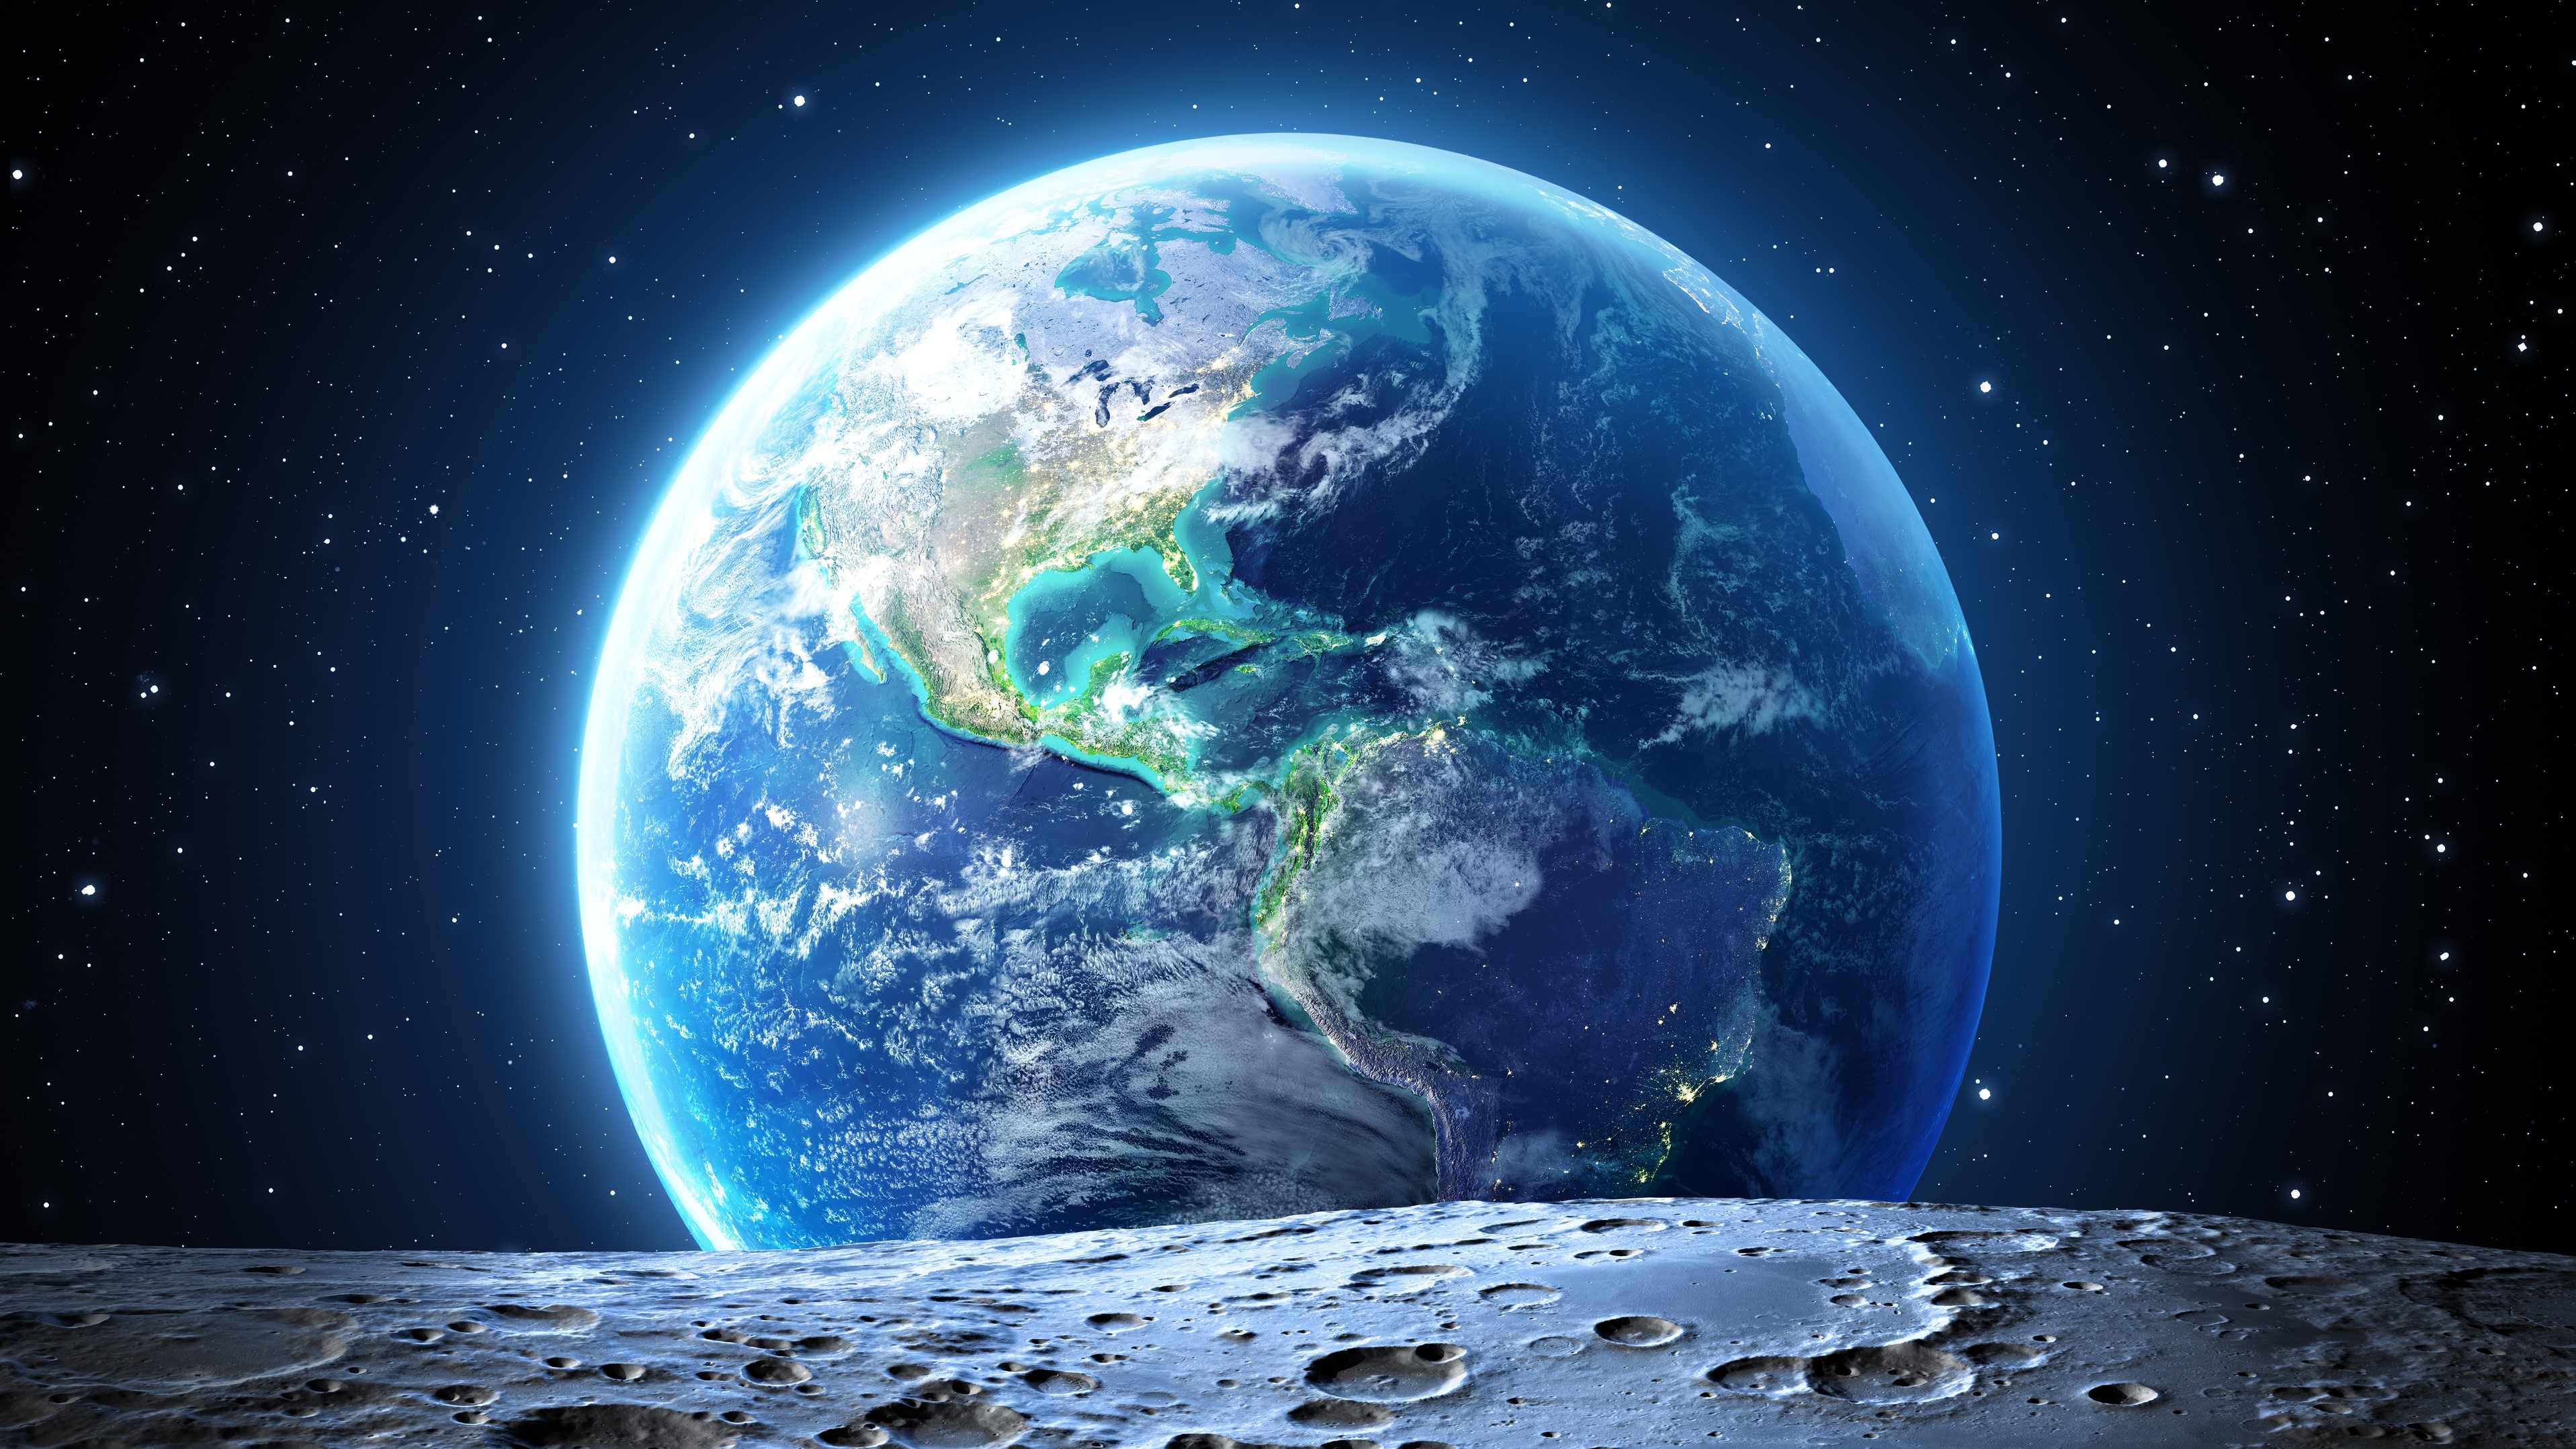 General 3834x2157 space world Moon stars orbital view sea atmosphere digital art Earth artwork